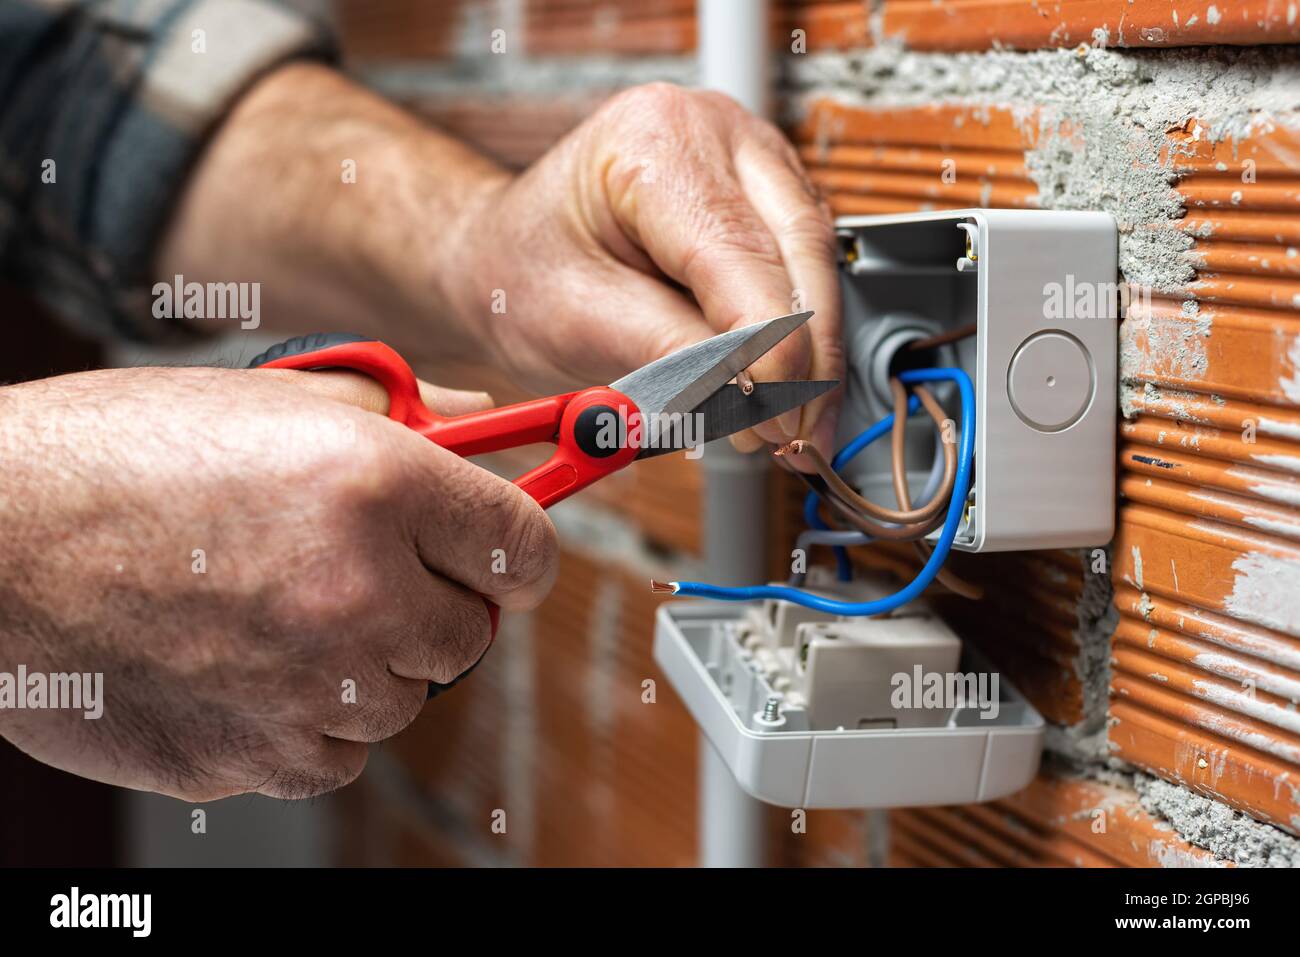 Der Elektriker Arbeiter bei der Arbeit mit der Schere bereitet die elektrischen Kabel des häuslichen elektrischen Systems vor. Bauindustrie. Stockfoto